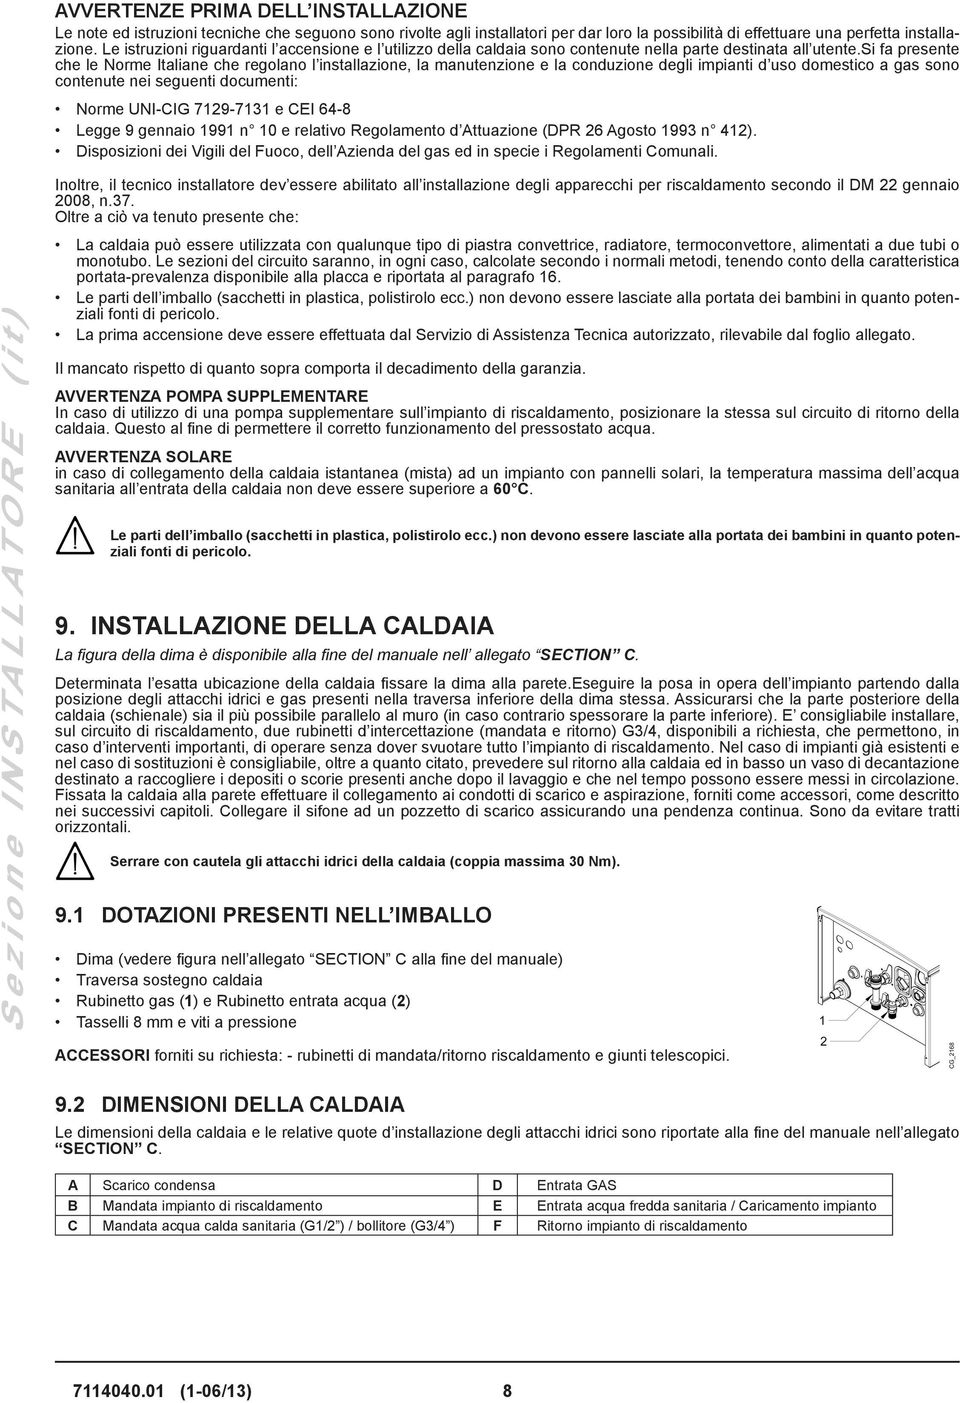 si fa presente che le Norme Italiane che regolano l installazione, la manutenzione e la conduzione degli impianti d uso domestico a gas sono contenute nei seguenti documenti: Norme UNI-CIG 7129-7131